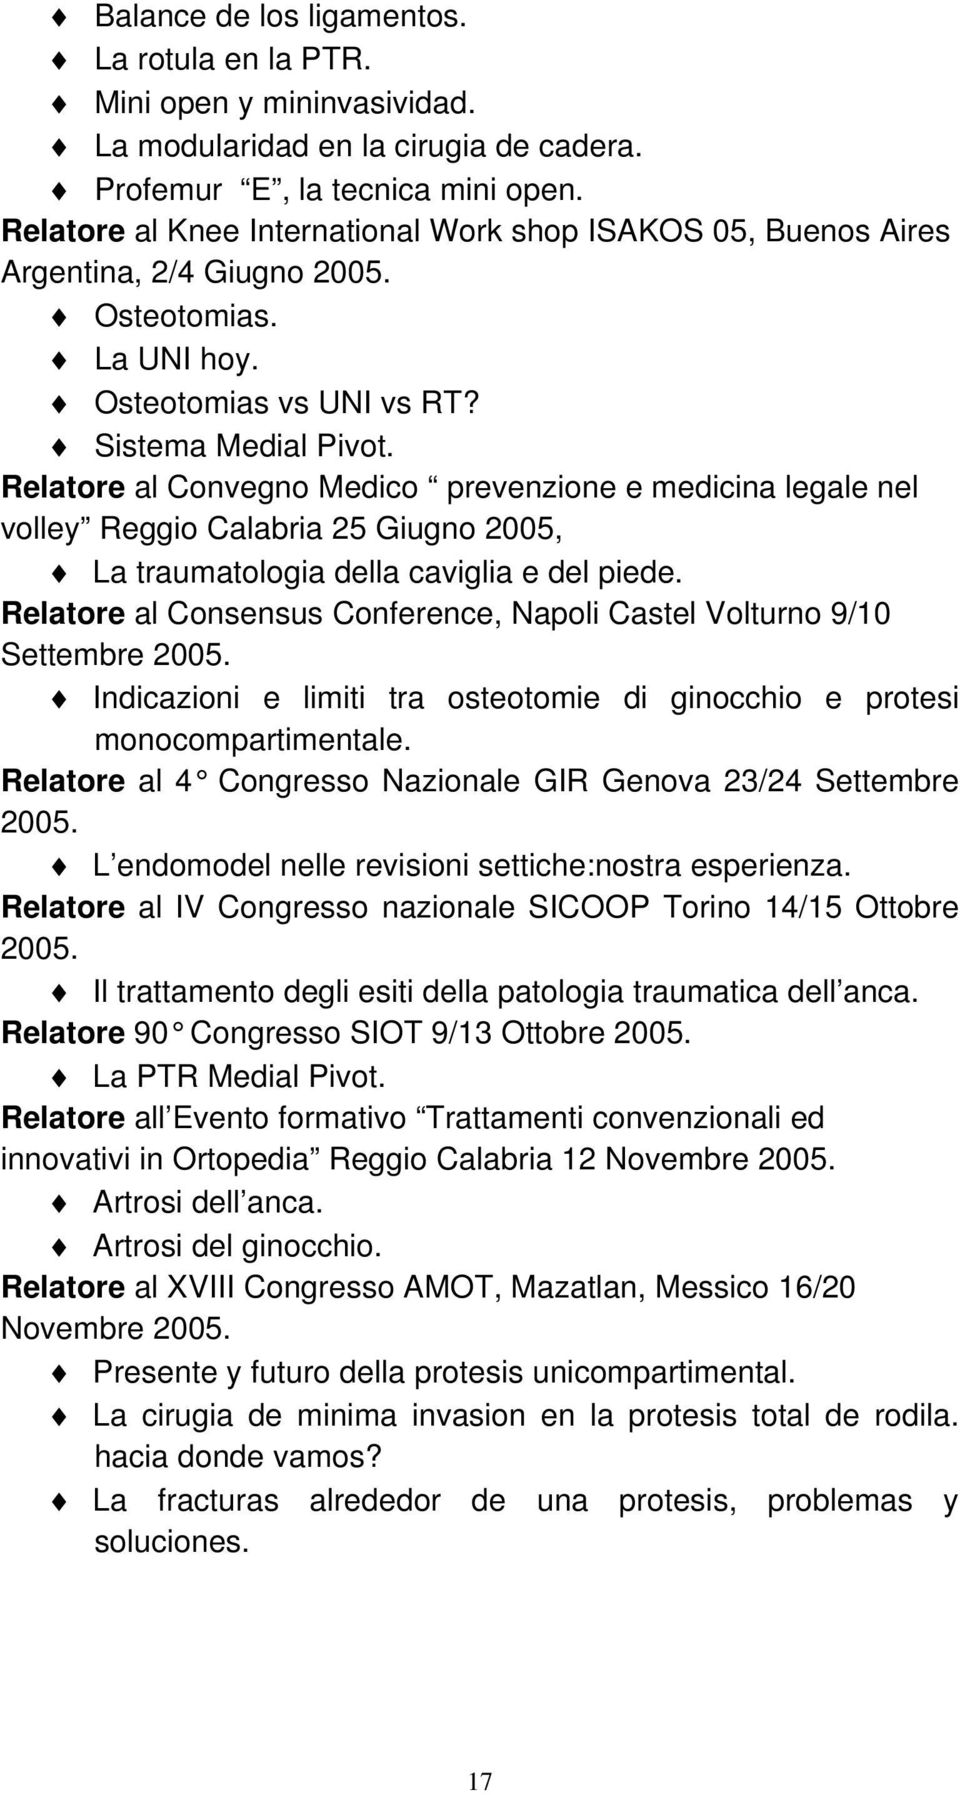 Relatore al Convegno Medico prevenzione e medicina legale nel volley Reggio Calabria 25 Giugno 2005, La traumatologia della caviglia e del piede.